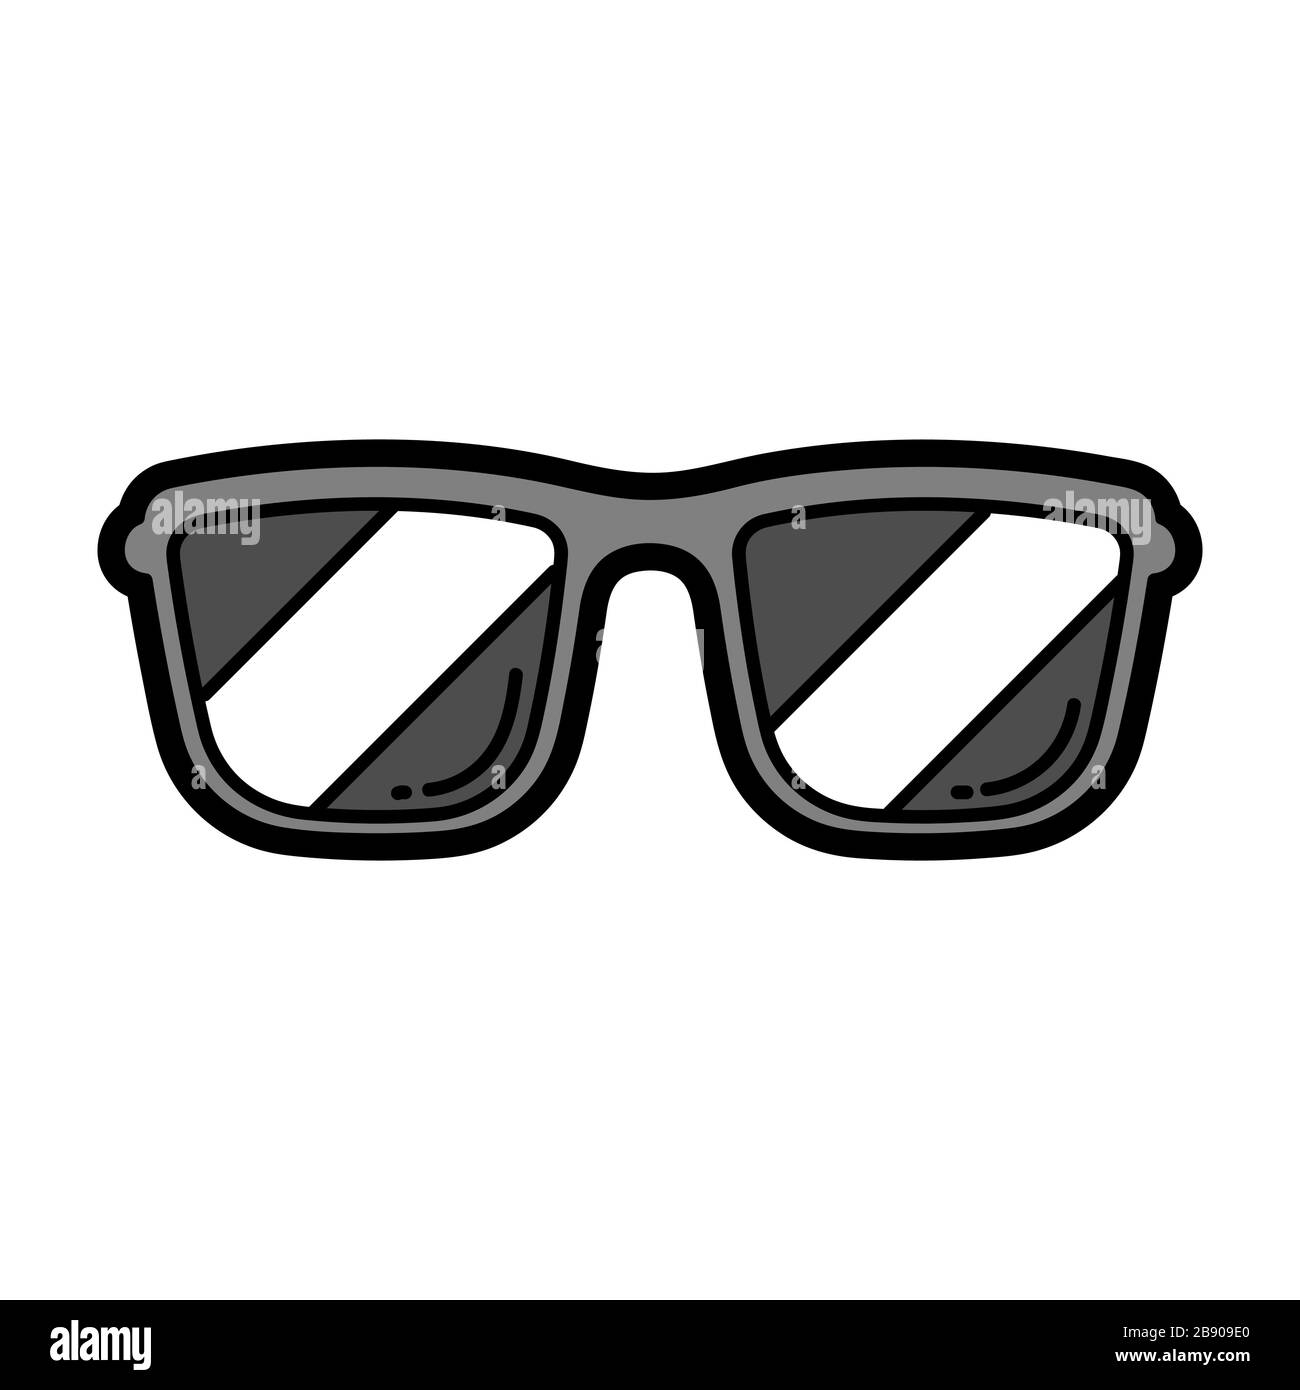 Cartoon face with sunglasses Banque d'images noir et blanc - Alamy